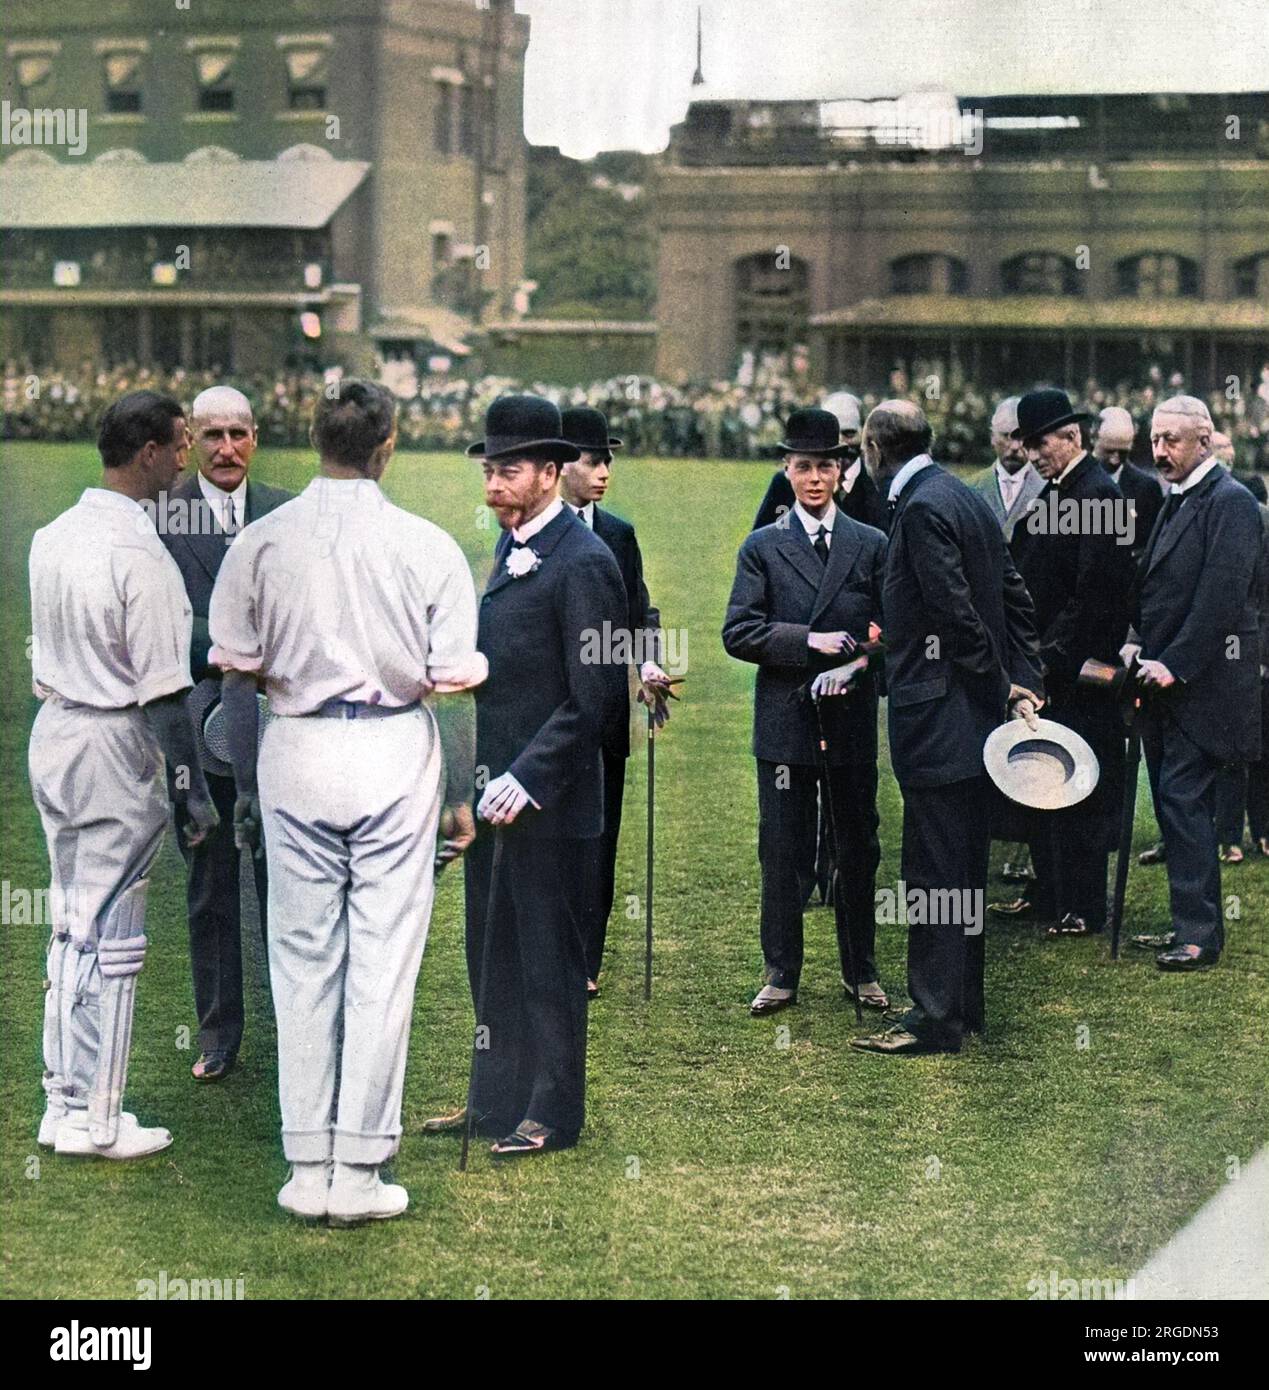 König George V. und Edward, Prinz von Wales (später König Edward VIII. Und dann Herzog von Windsor), wurden auf Lord's Cricket Ground, wo im Juni 1914 sein 100-jähriges Jubiläum gefeiert wurde, fotografiert. Der Anlass war geprägt von einem Kampf zwischen M.C.C. südafrikanischen Helden und dem Rest Englands. Der König redet mit Mr. C. B. Fry, Mr. Johnny Douglas und Lord Hawke. Prinz Albert (später König George VI.) wird direkt hinter dem König gesehen, und der Prinz von Wales spricht mit Herrn F. E. Lacey. Auf der rechten Seite sind Sir C. Cust und der Herzog von Devonshire. Stockfoto